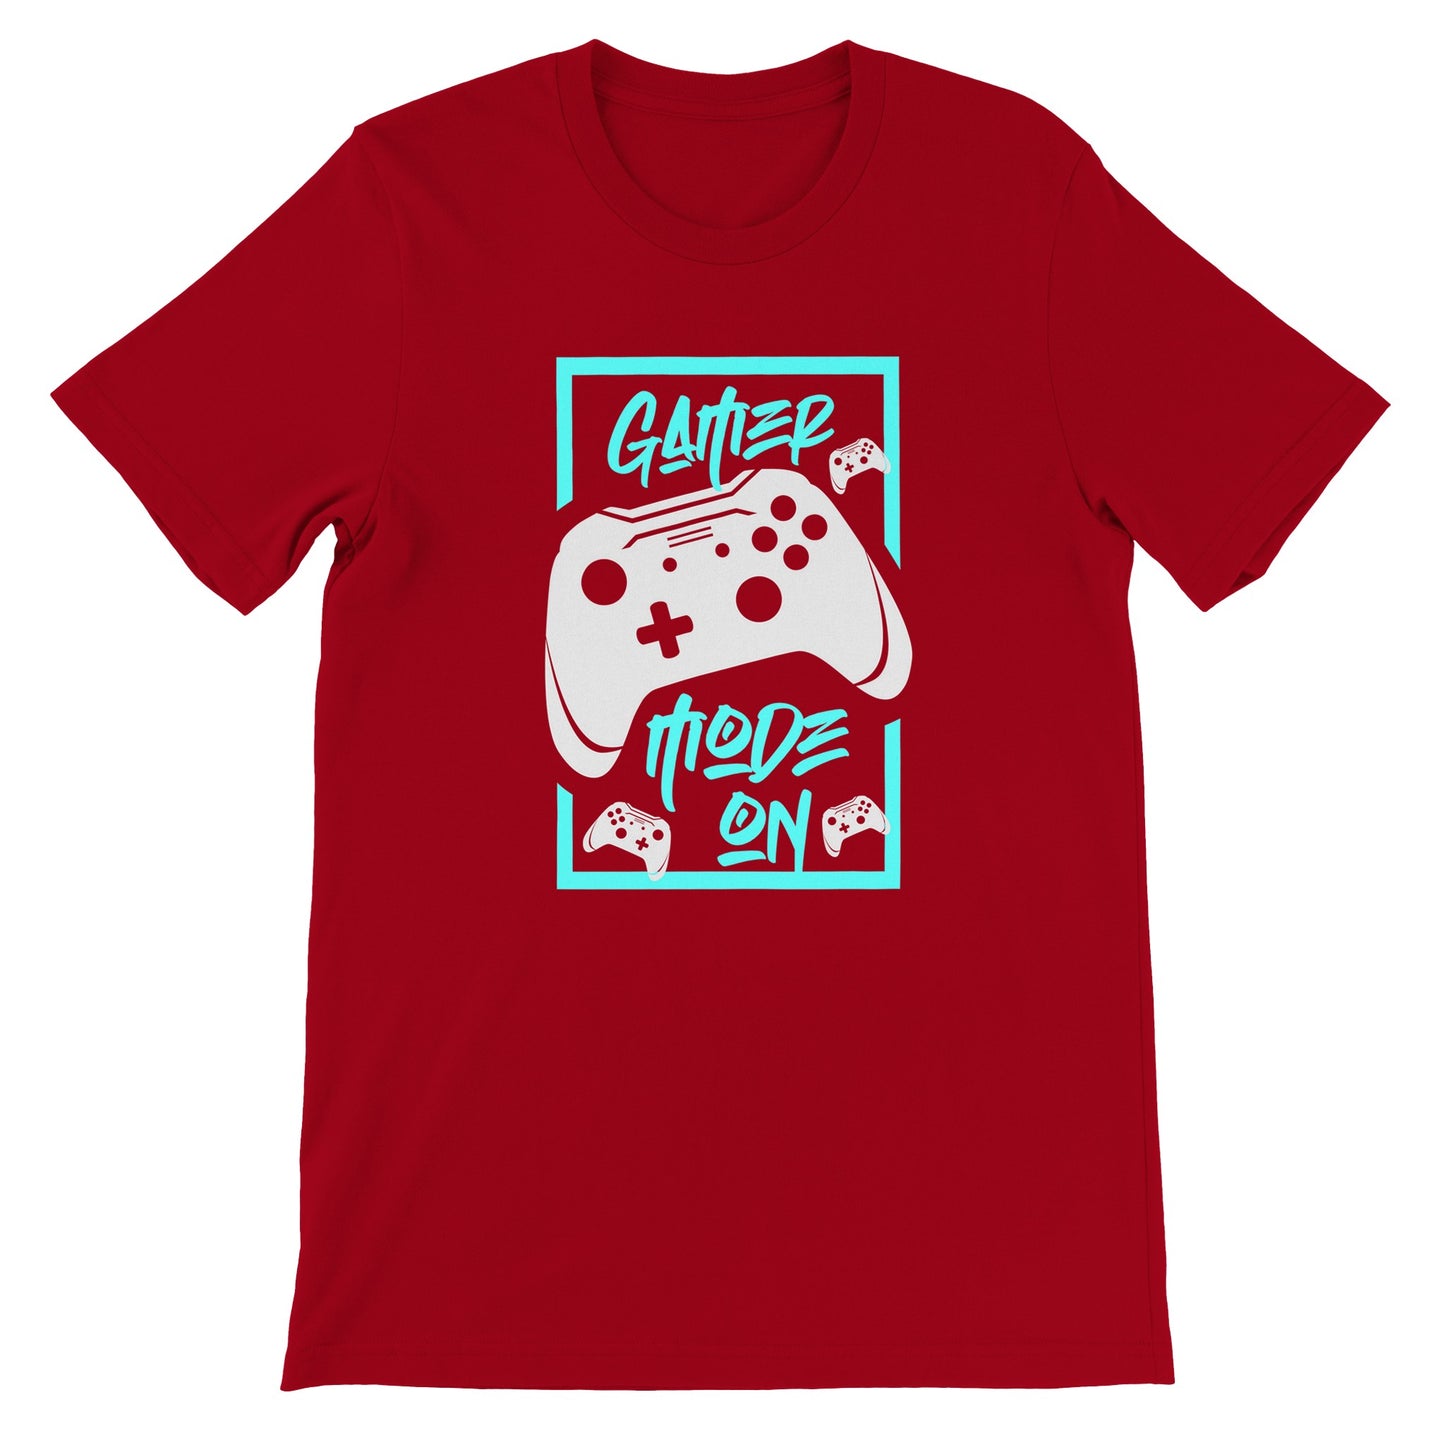 Gaming T-shirts - Gamer Mode On - Premium Unisex T-shirt 